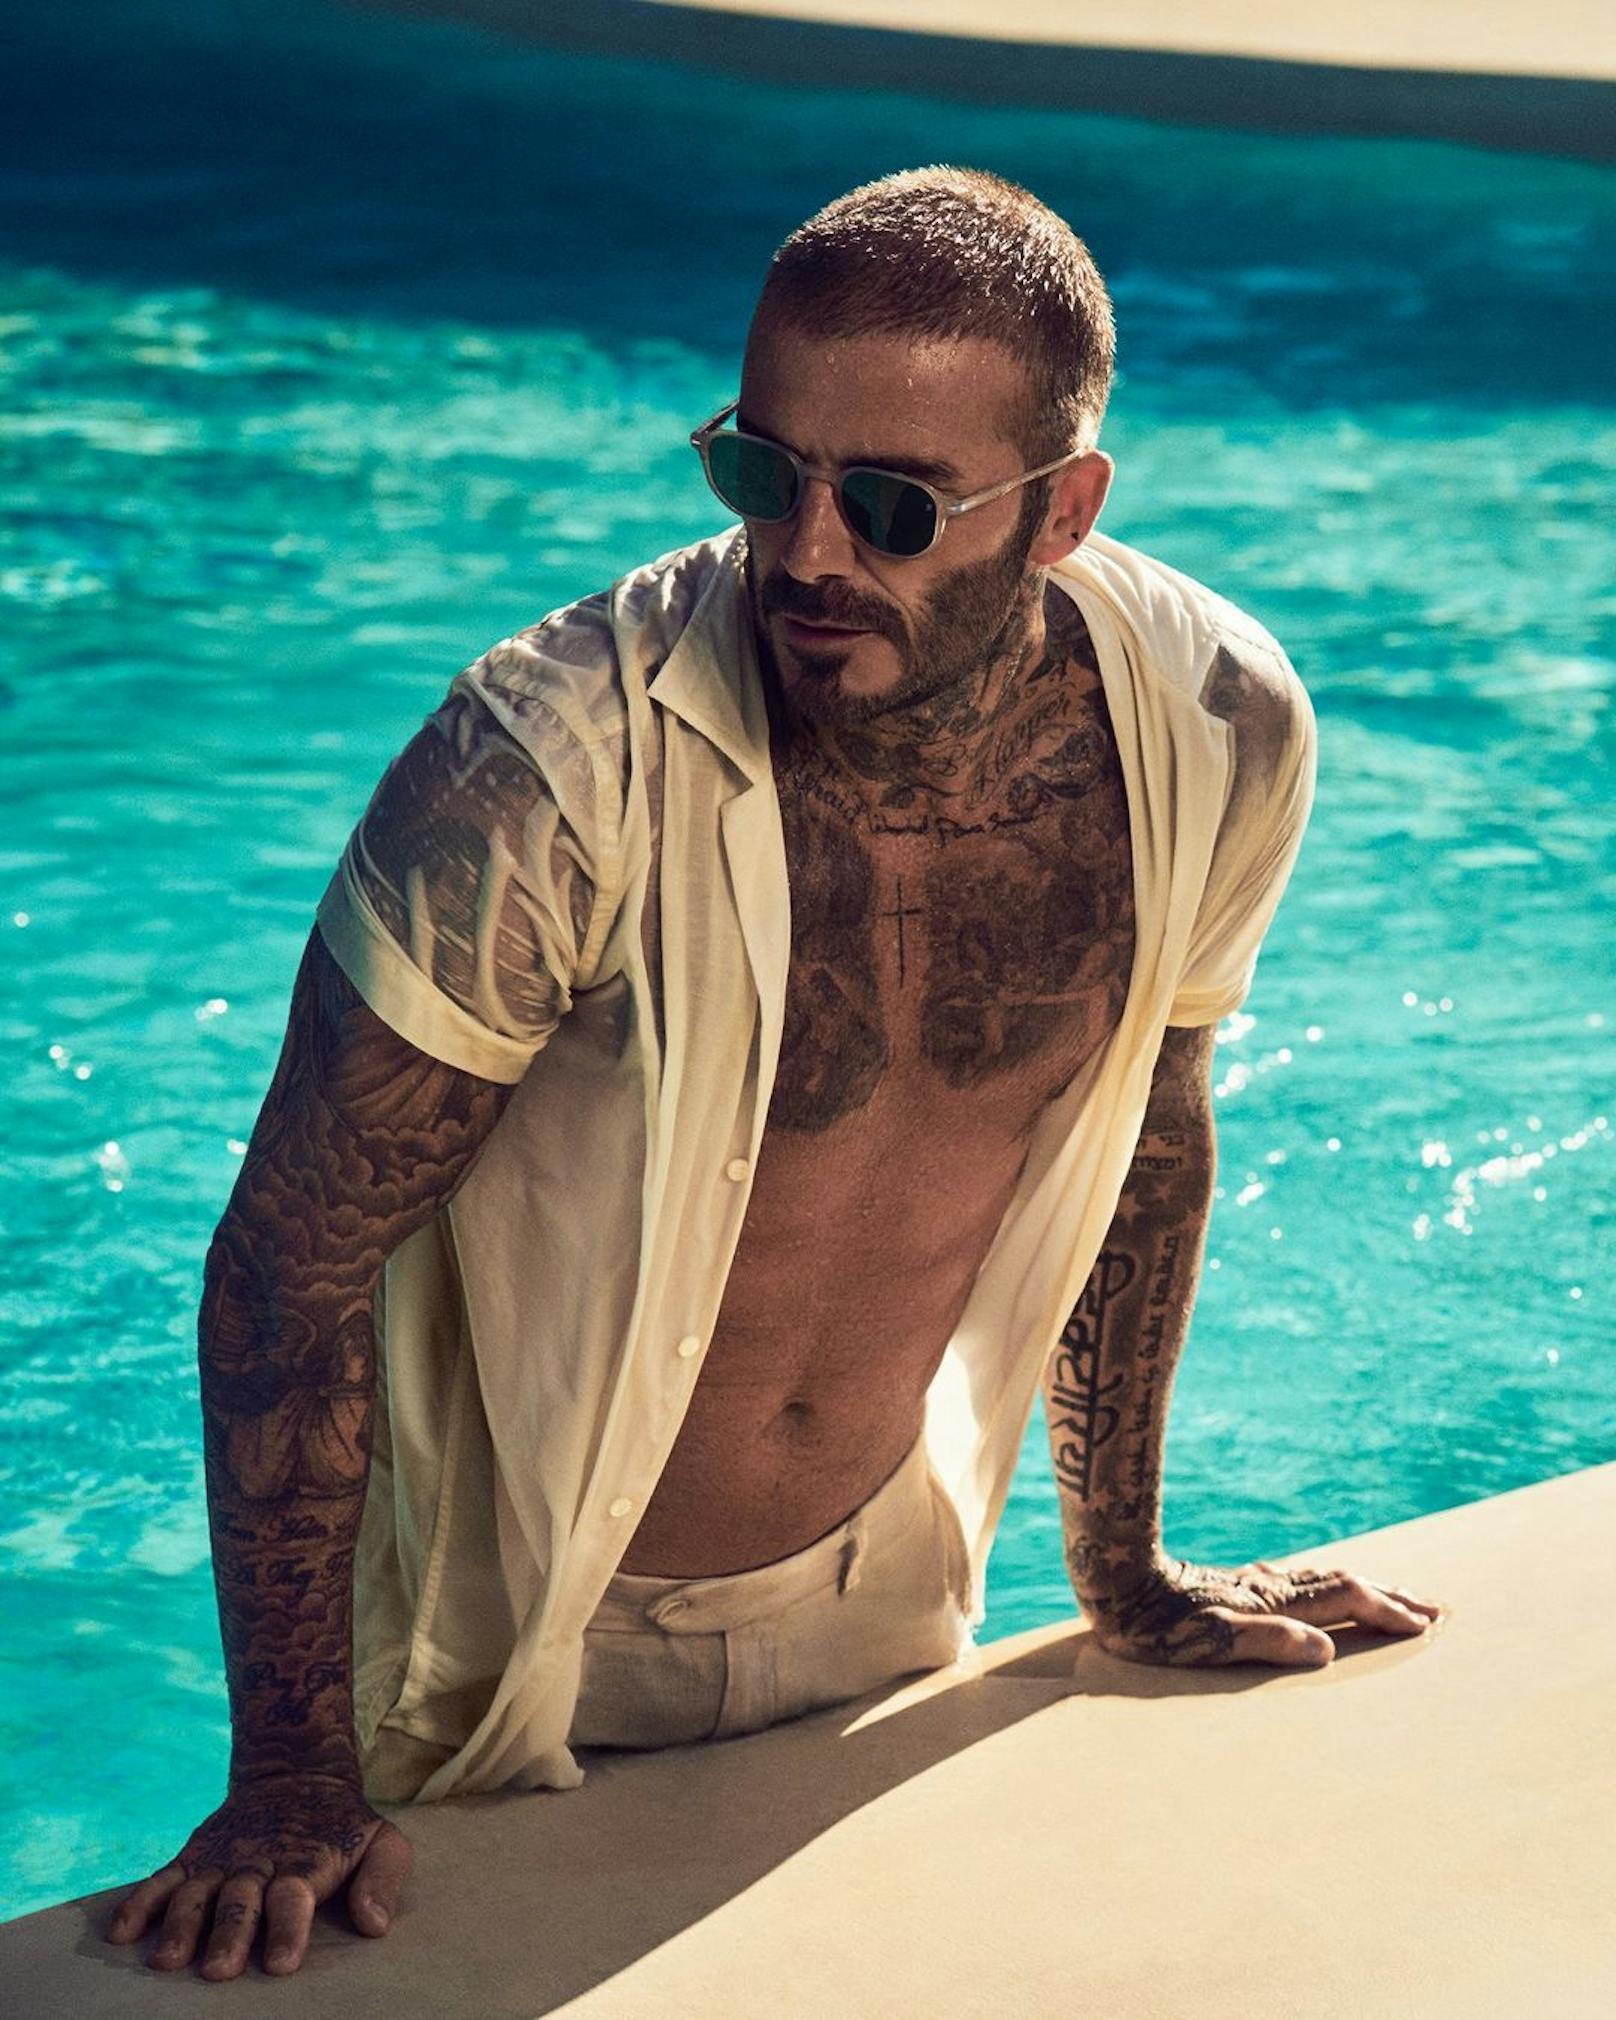 Für seine Sonnenbrillenmarke sprang David Beckham einmal in den Pool.